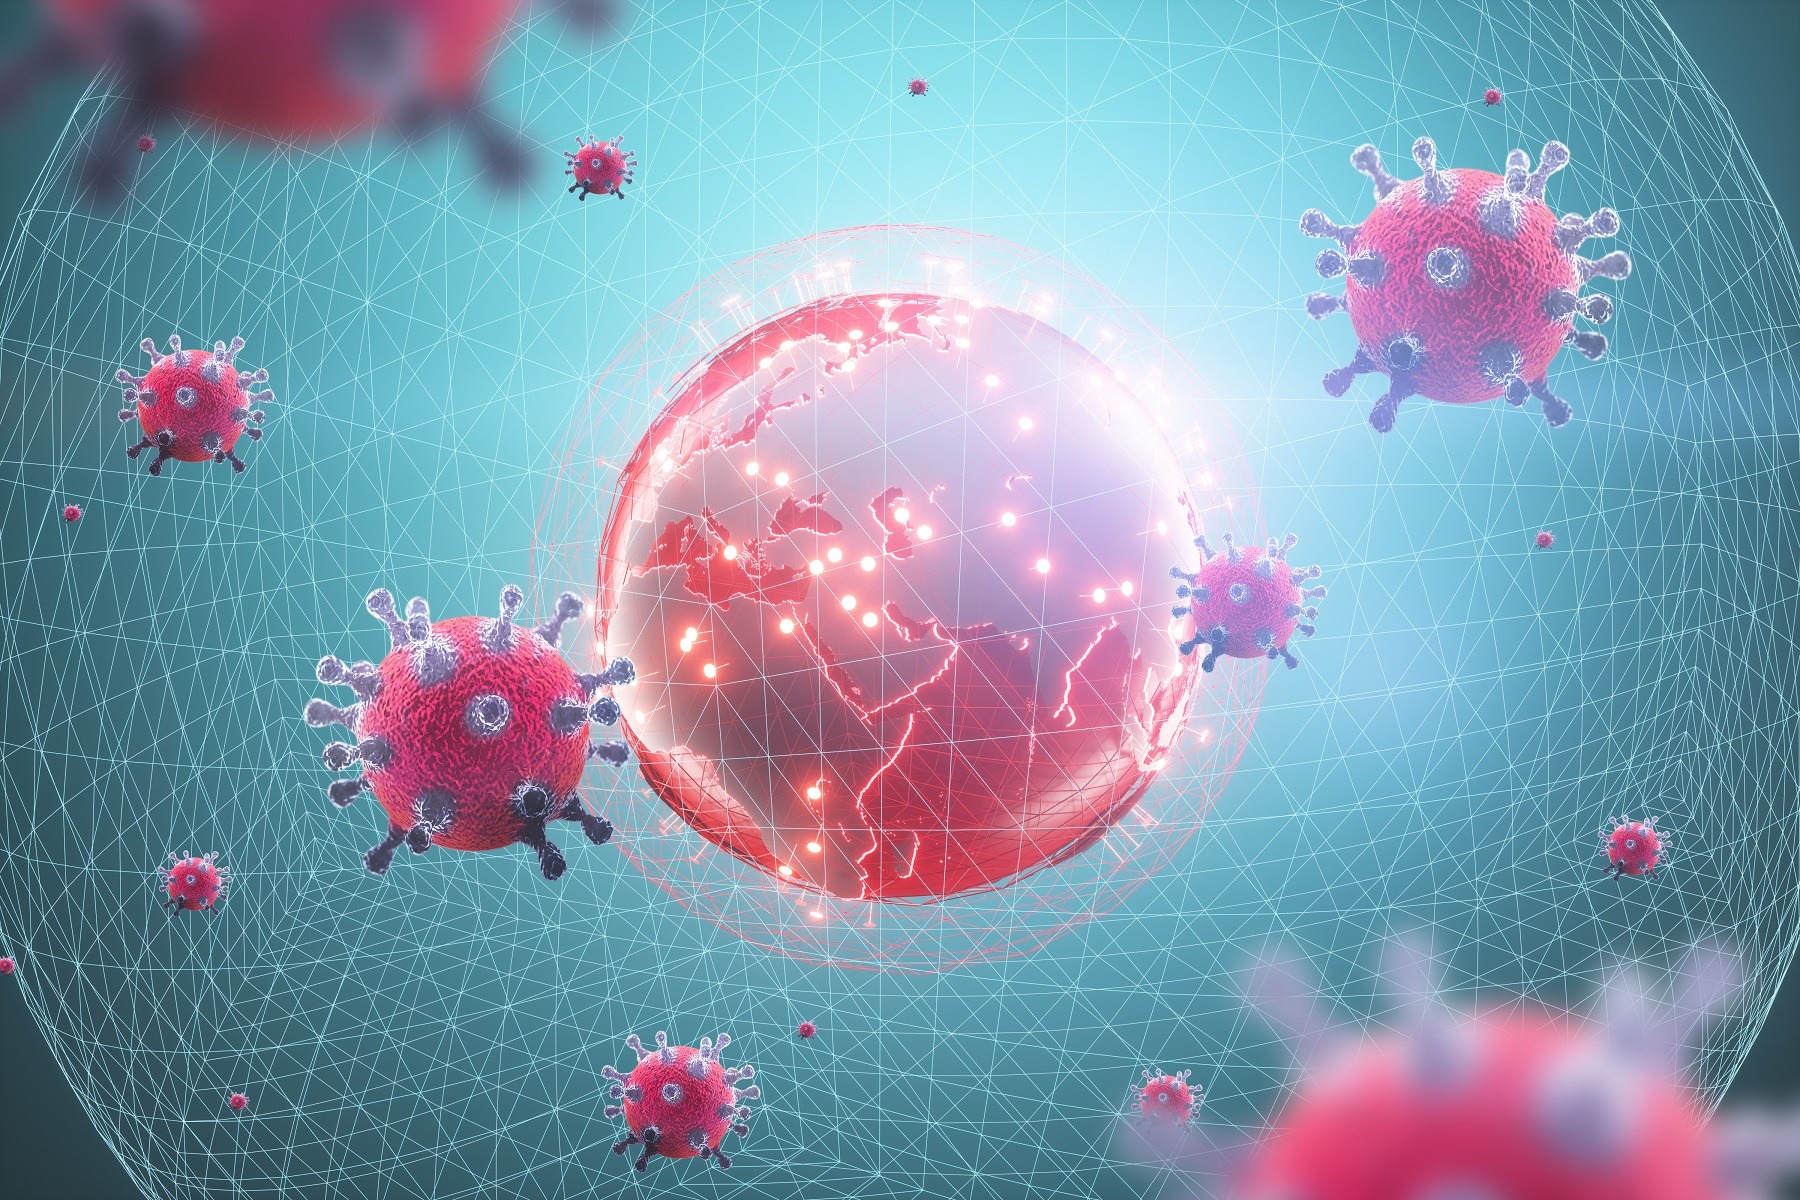 Coronavirus: sforăitul expune unui risc sporit de deces